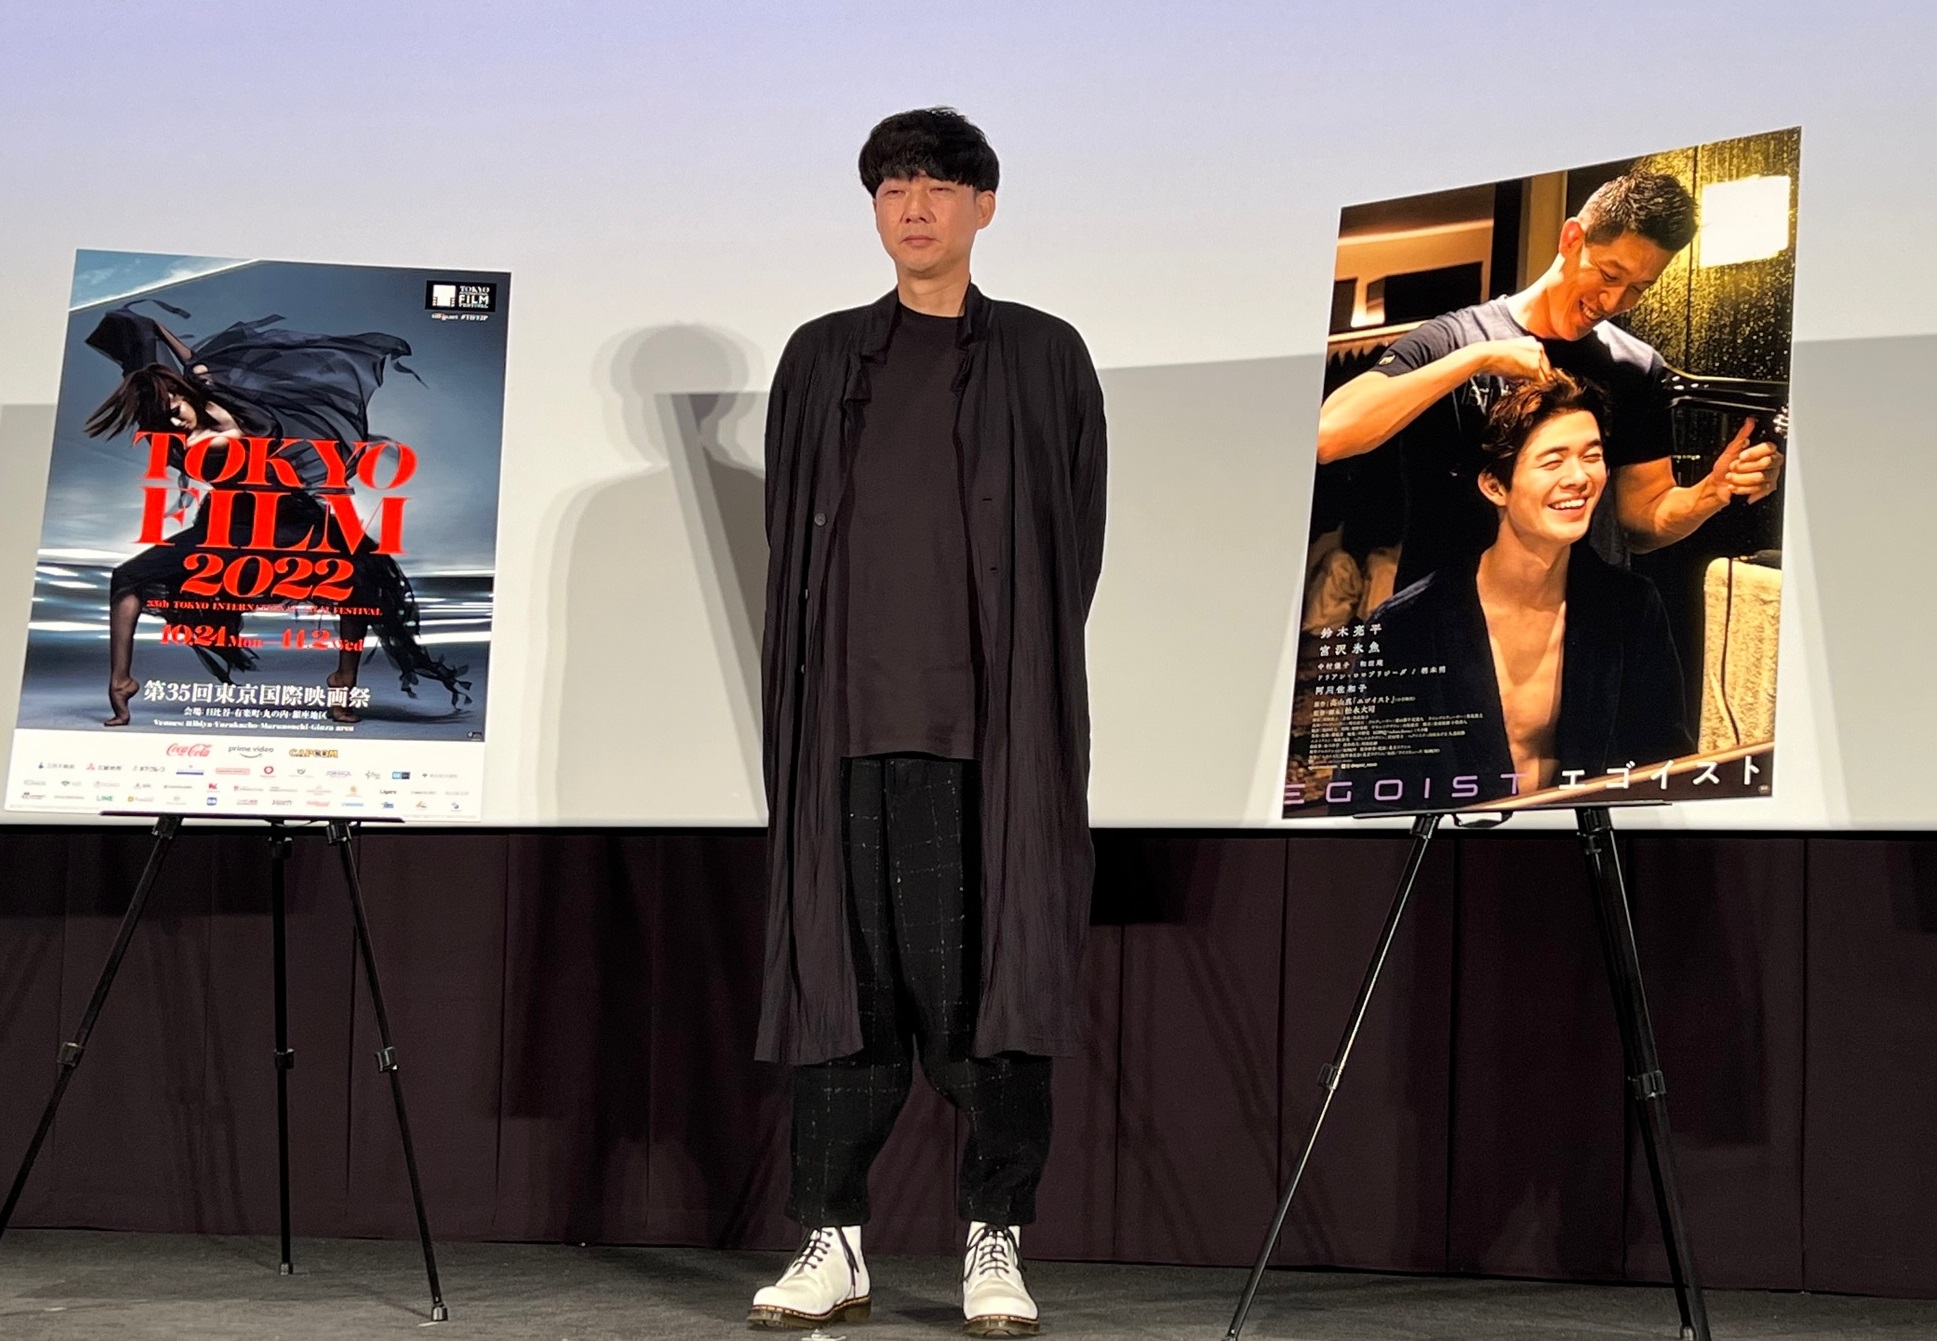 松永大司監督「エゴイスト」の東京国際映画祭ワールドプレミアで同作を語る　「鈴木亮平と沢氷魚が演じるラブストーリー」
